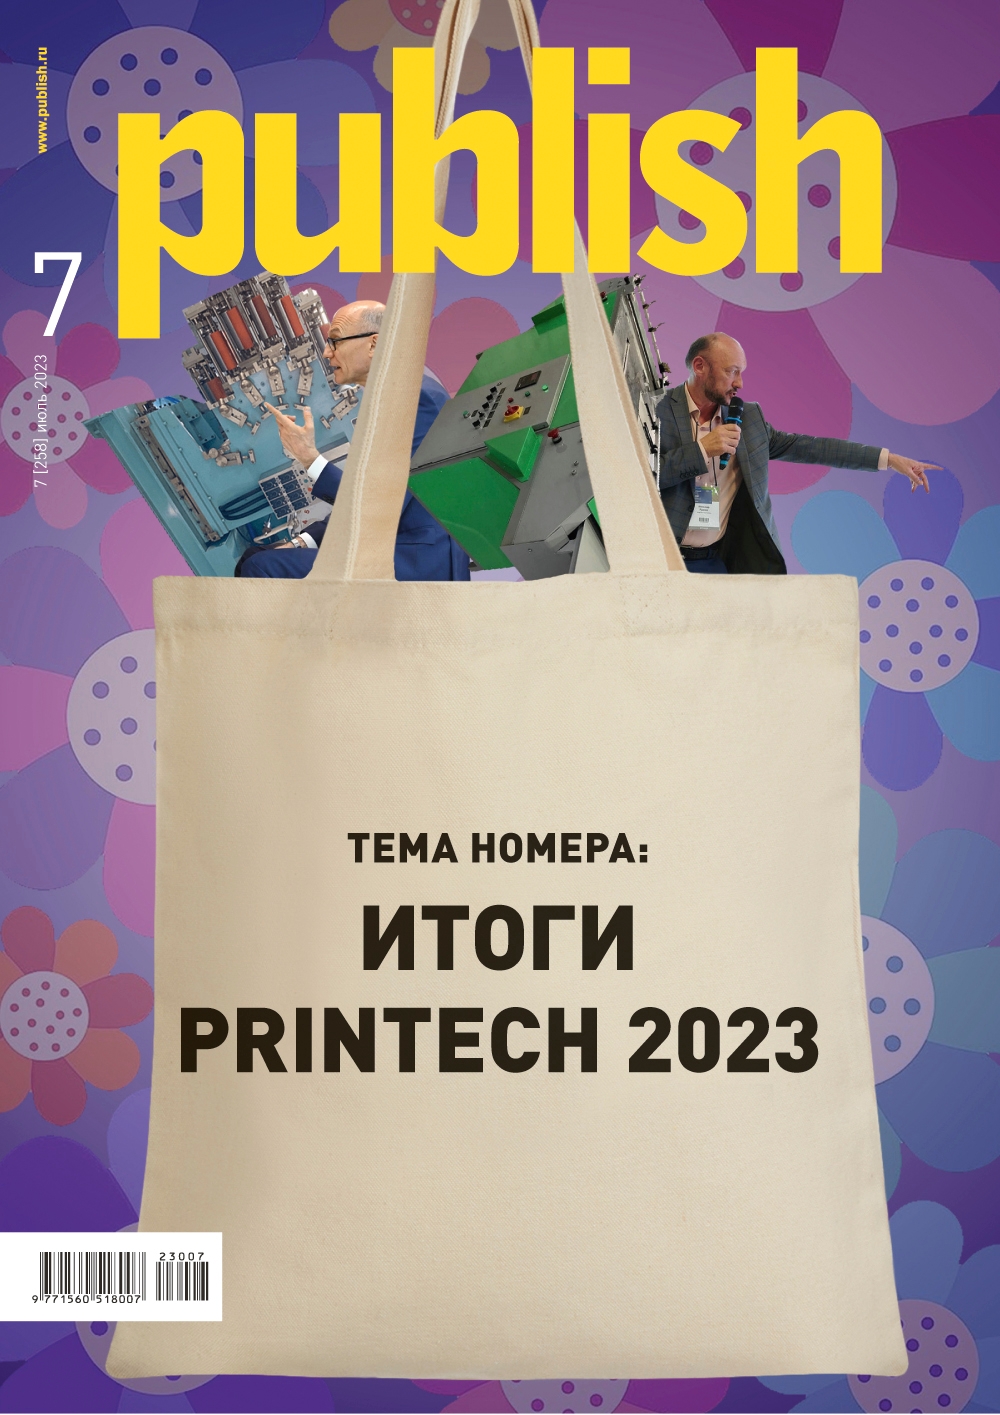 Итоги Printech 2023 в новом выпуске журнала